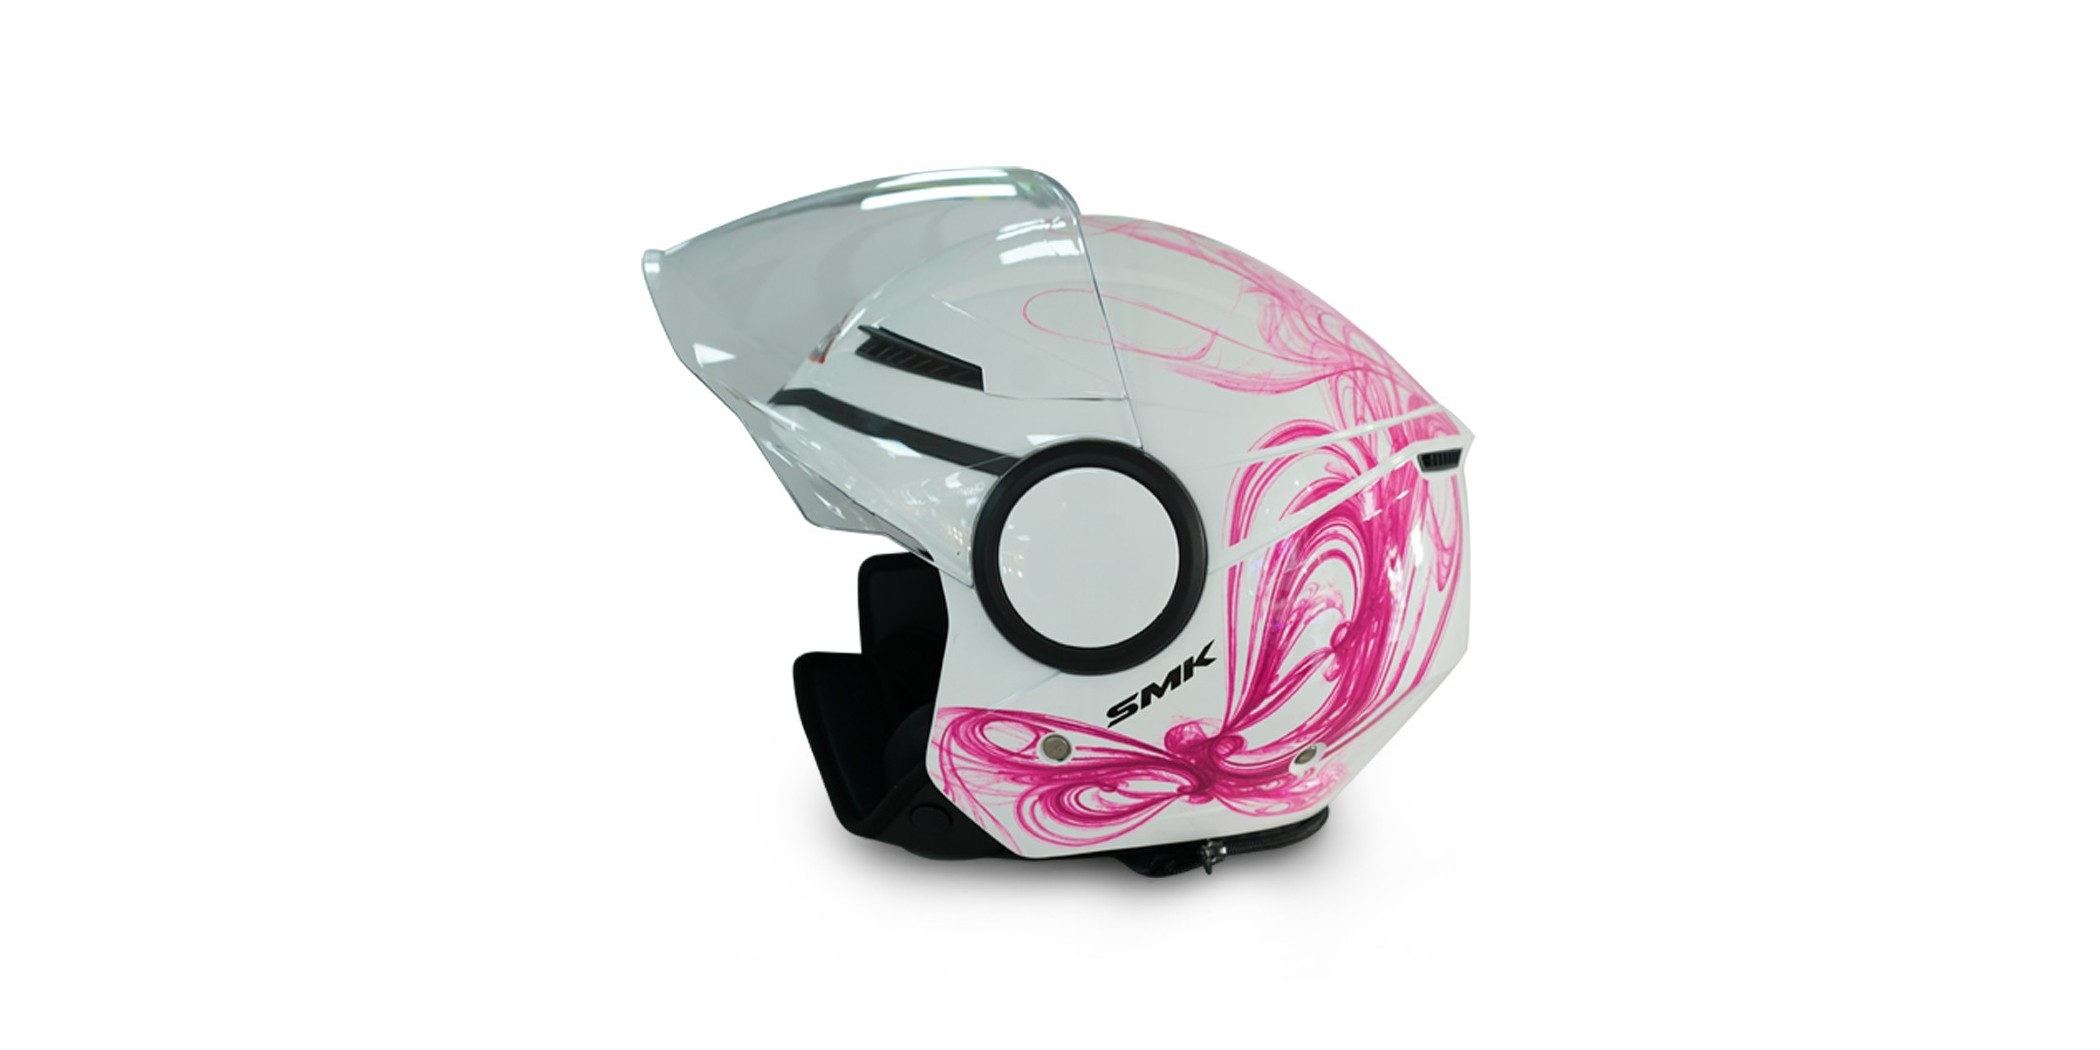 SMK Streem GL190 G/White Fantasy helmet 06674